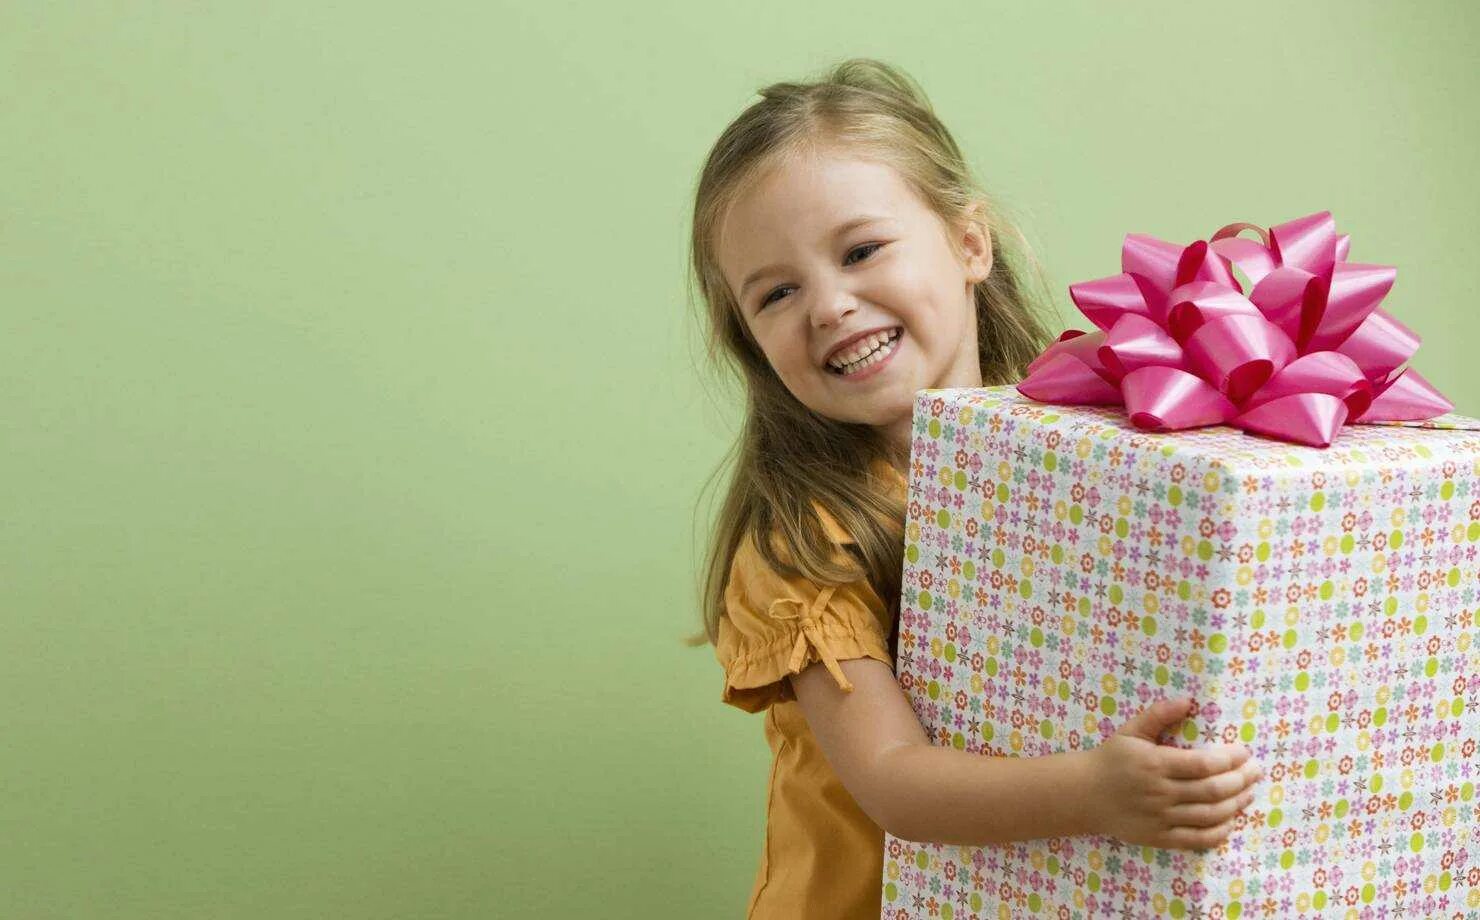 Литл сюрприз. Подарки для детей. Подарок для девочки. Ребенок радуется подарку. Подарки на день рождения девочке.